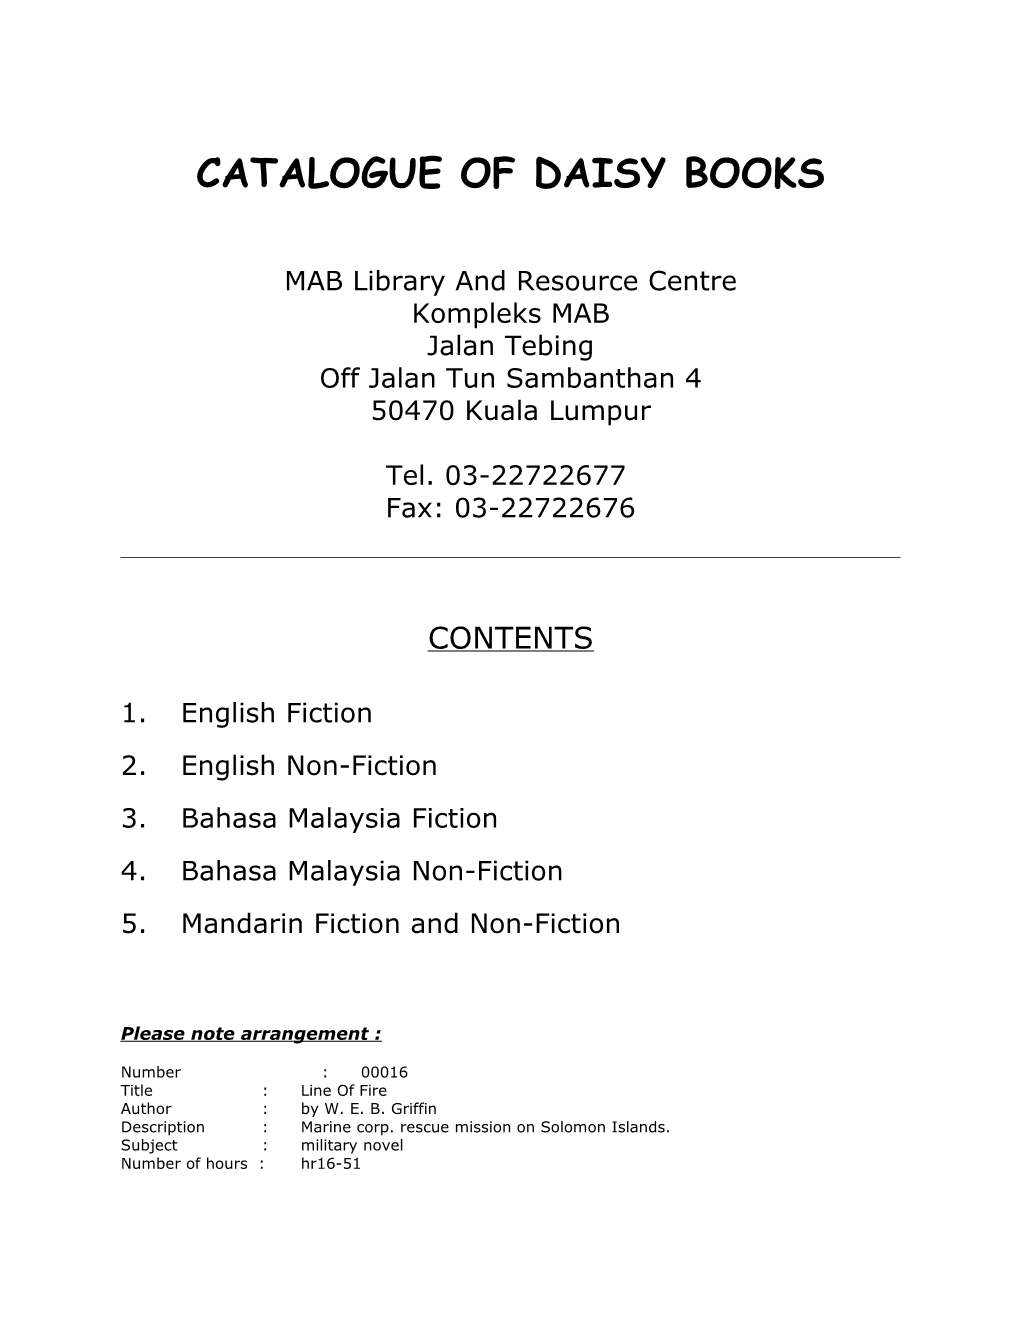 Catalogue of Daisy Books